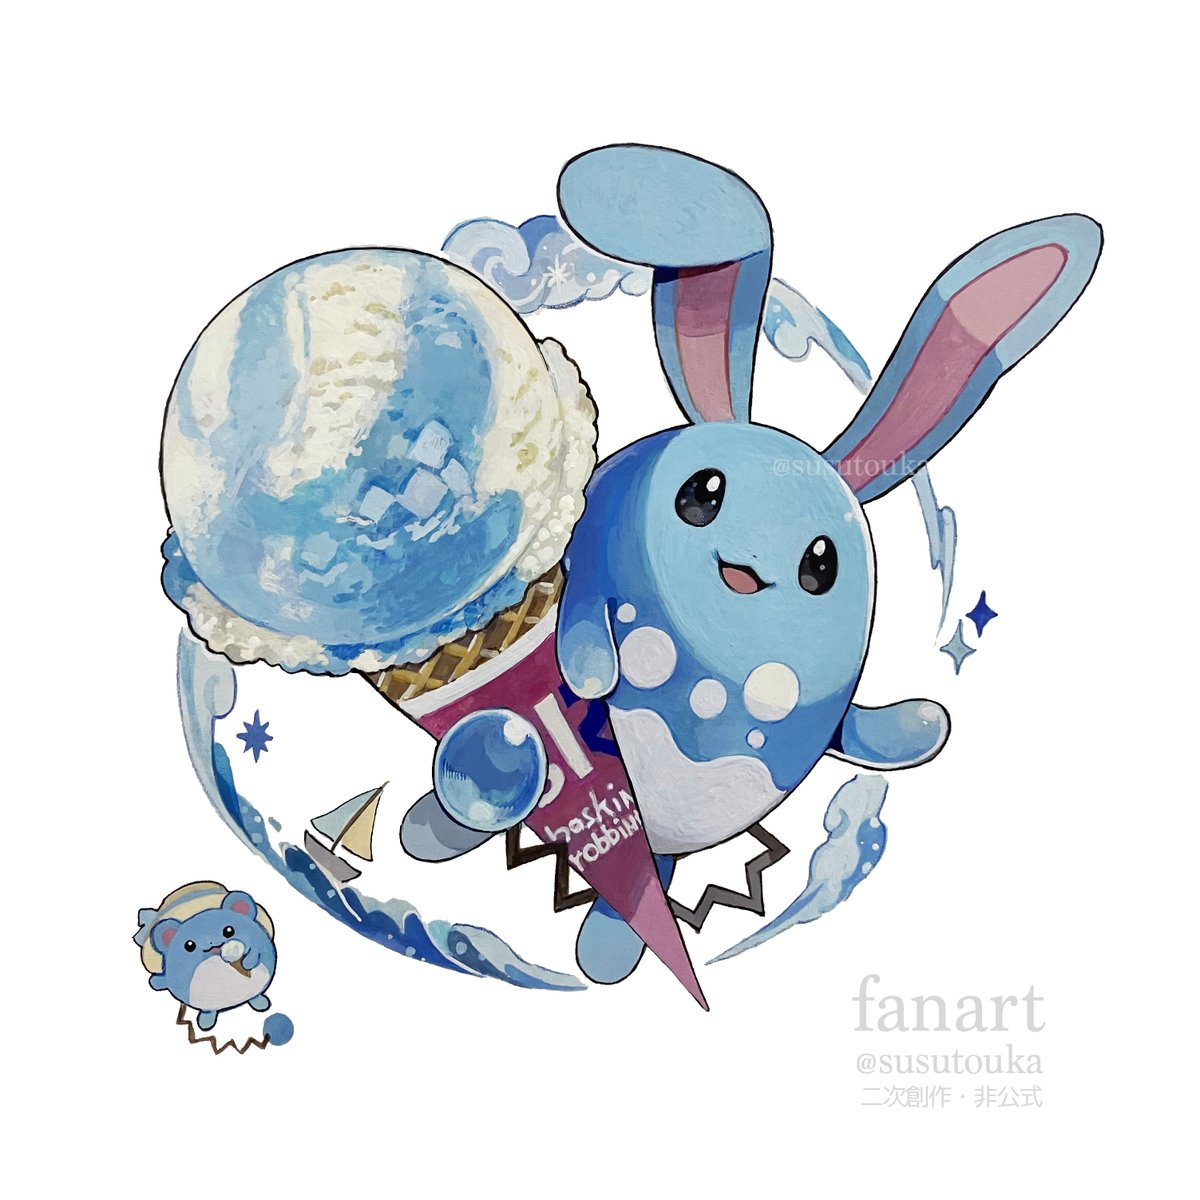 「ソーダフロート × マリルリ  #pokemon #サーティワン #FANART」|susutoukaのイラスト